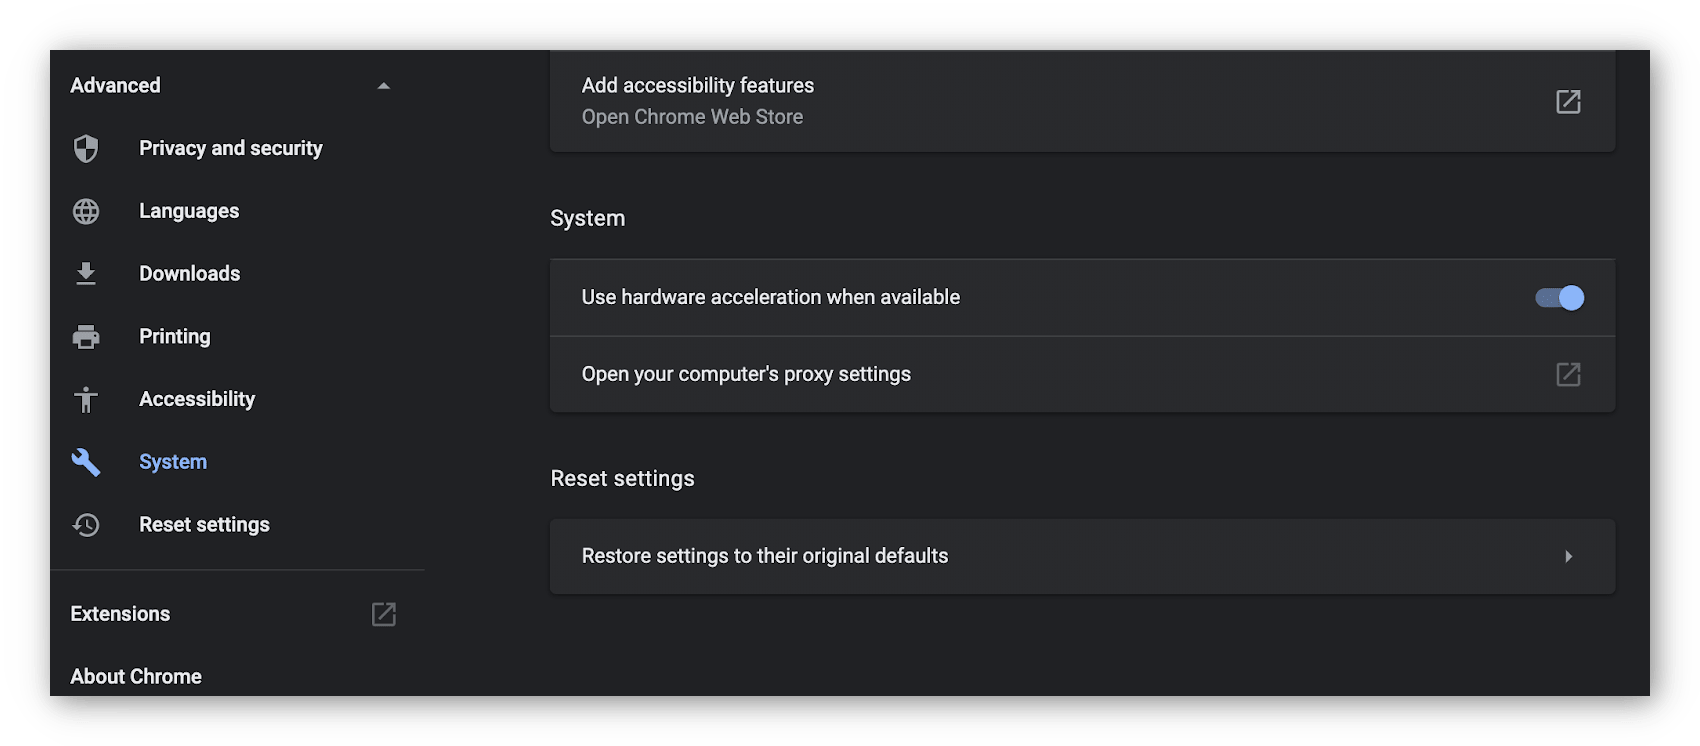 Captura de tela do sistema de preferências avançadas no Chrome